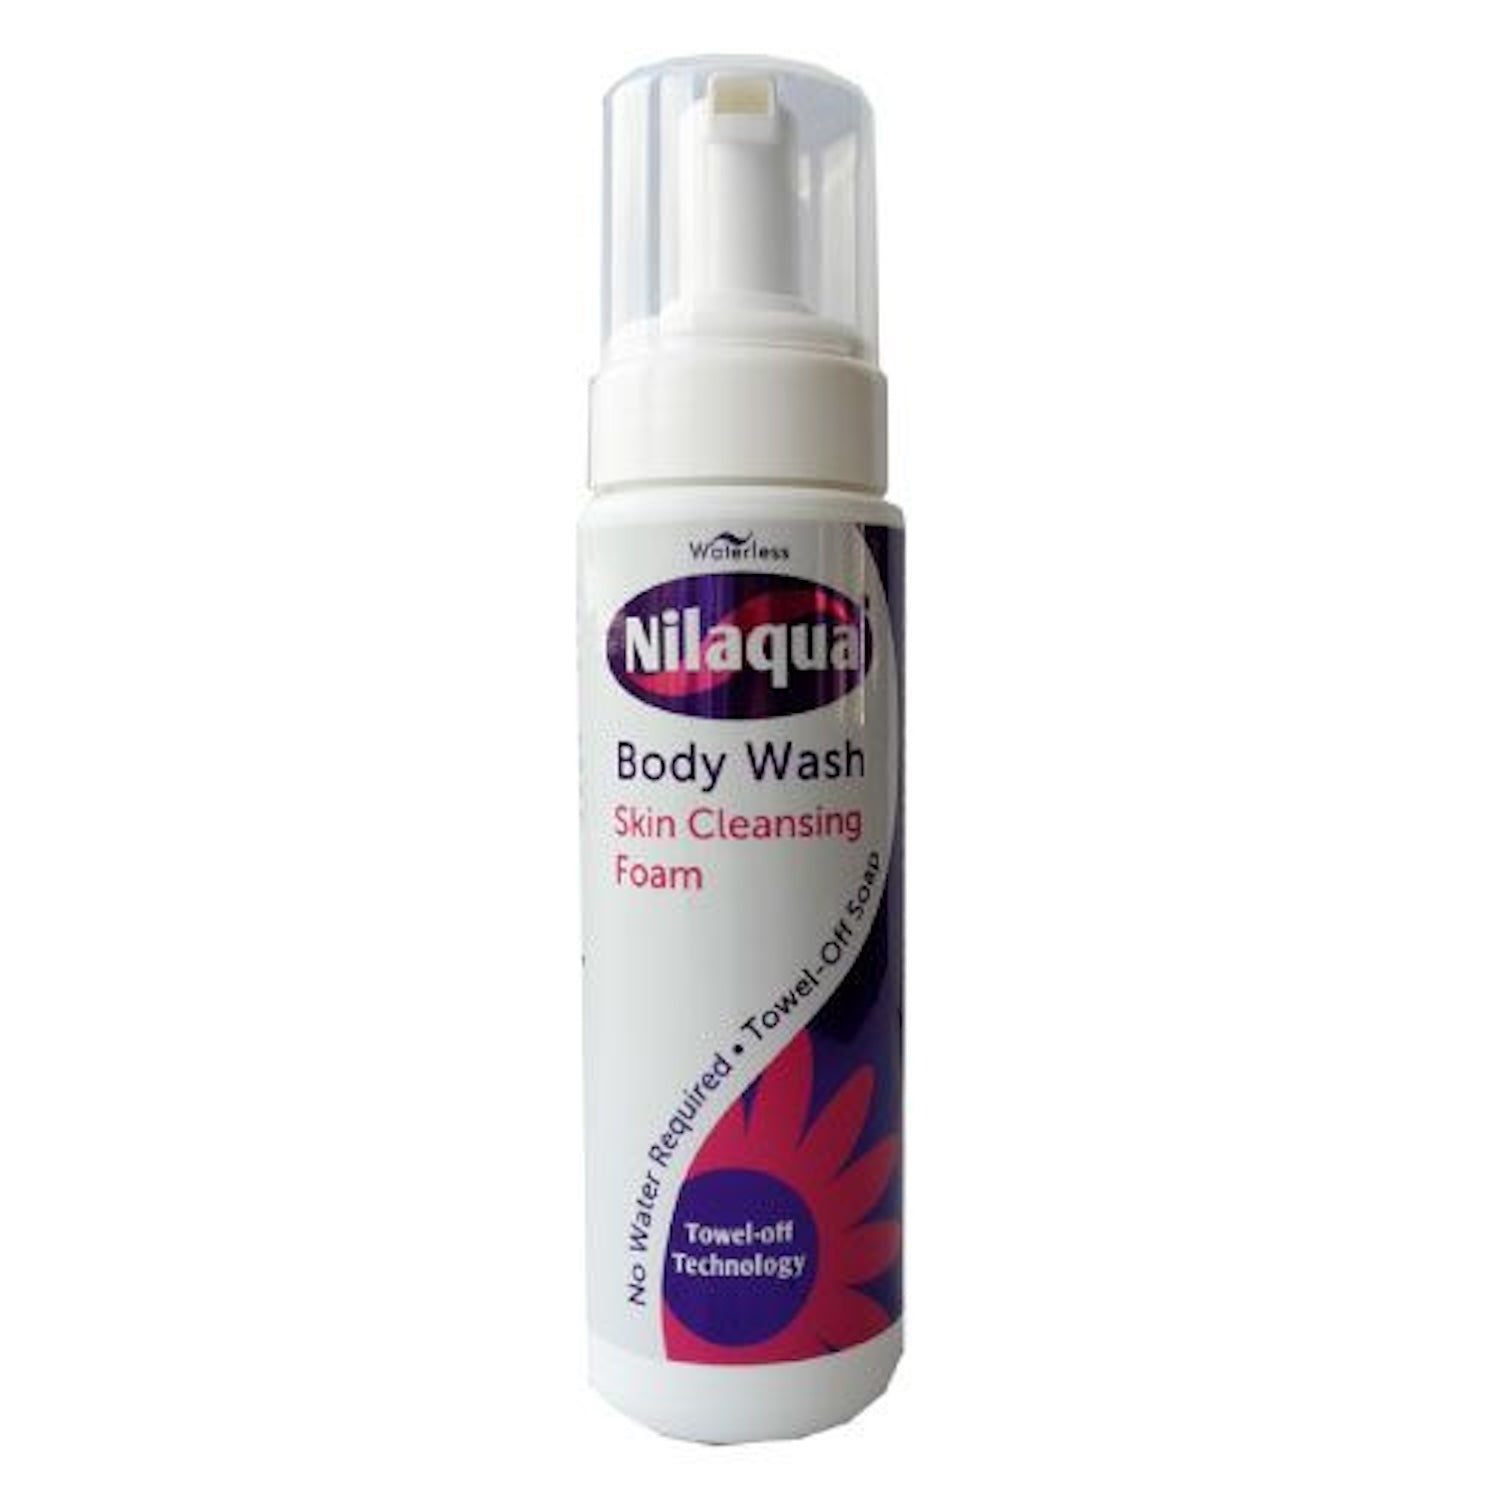 Nilaqua Skin Cleansing Foam 200ml | Aerosol Free